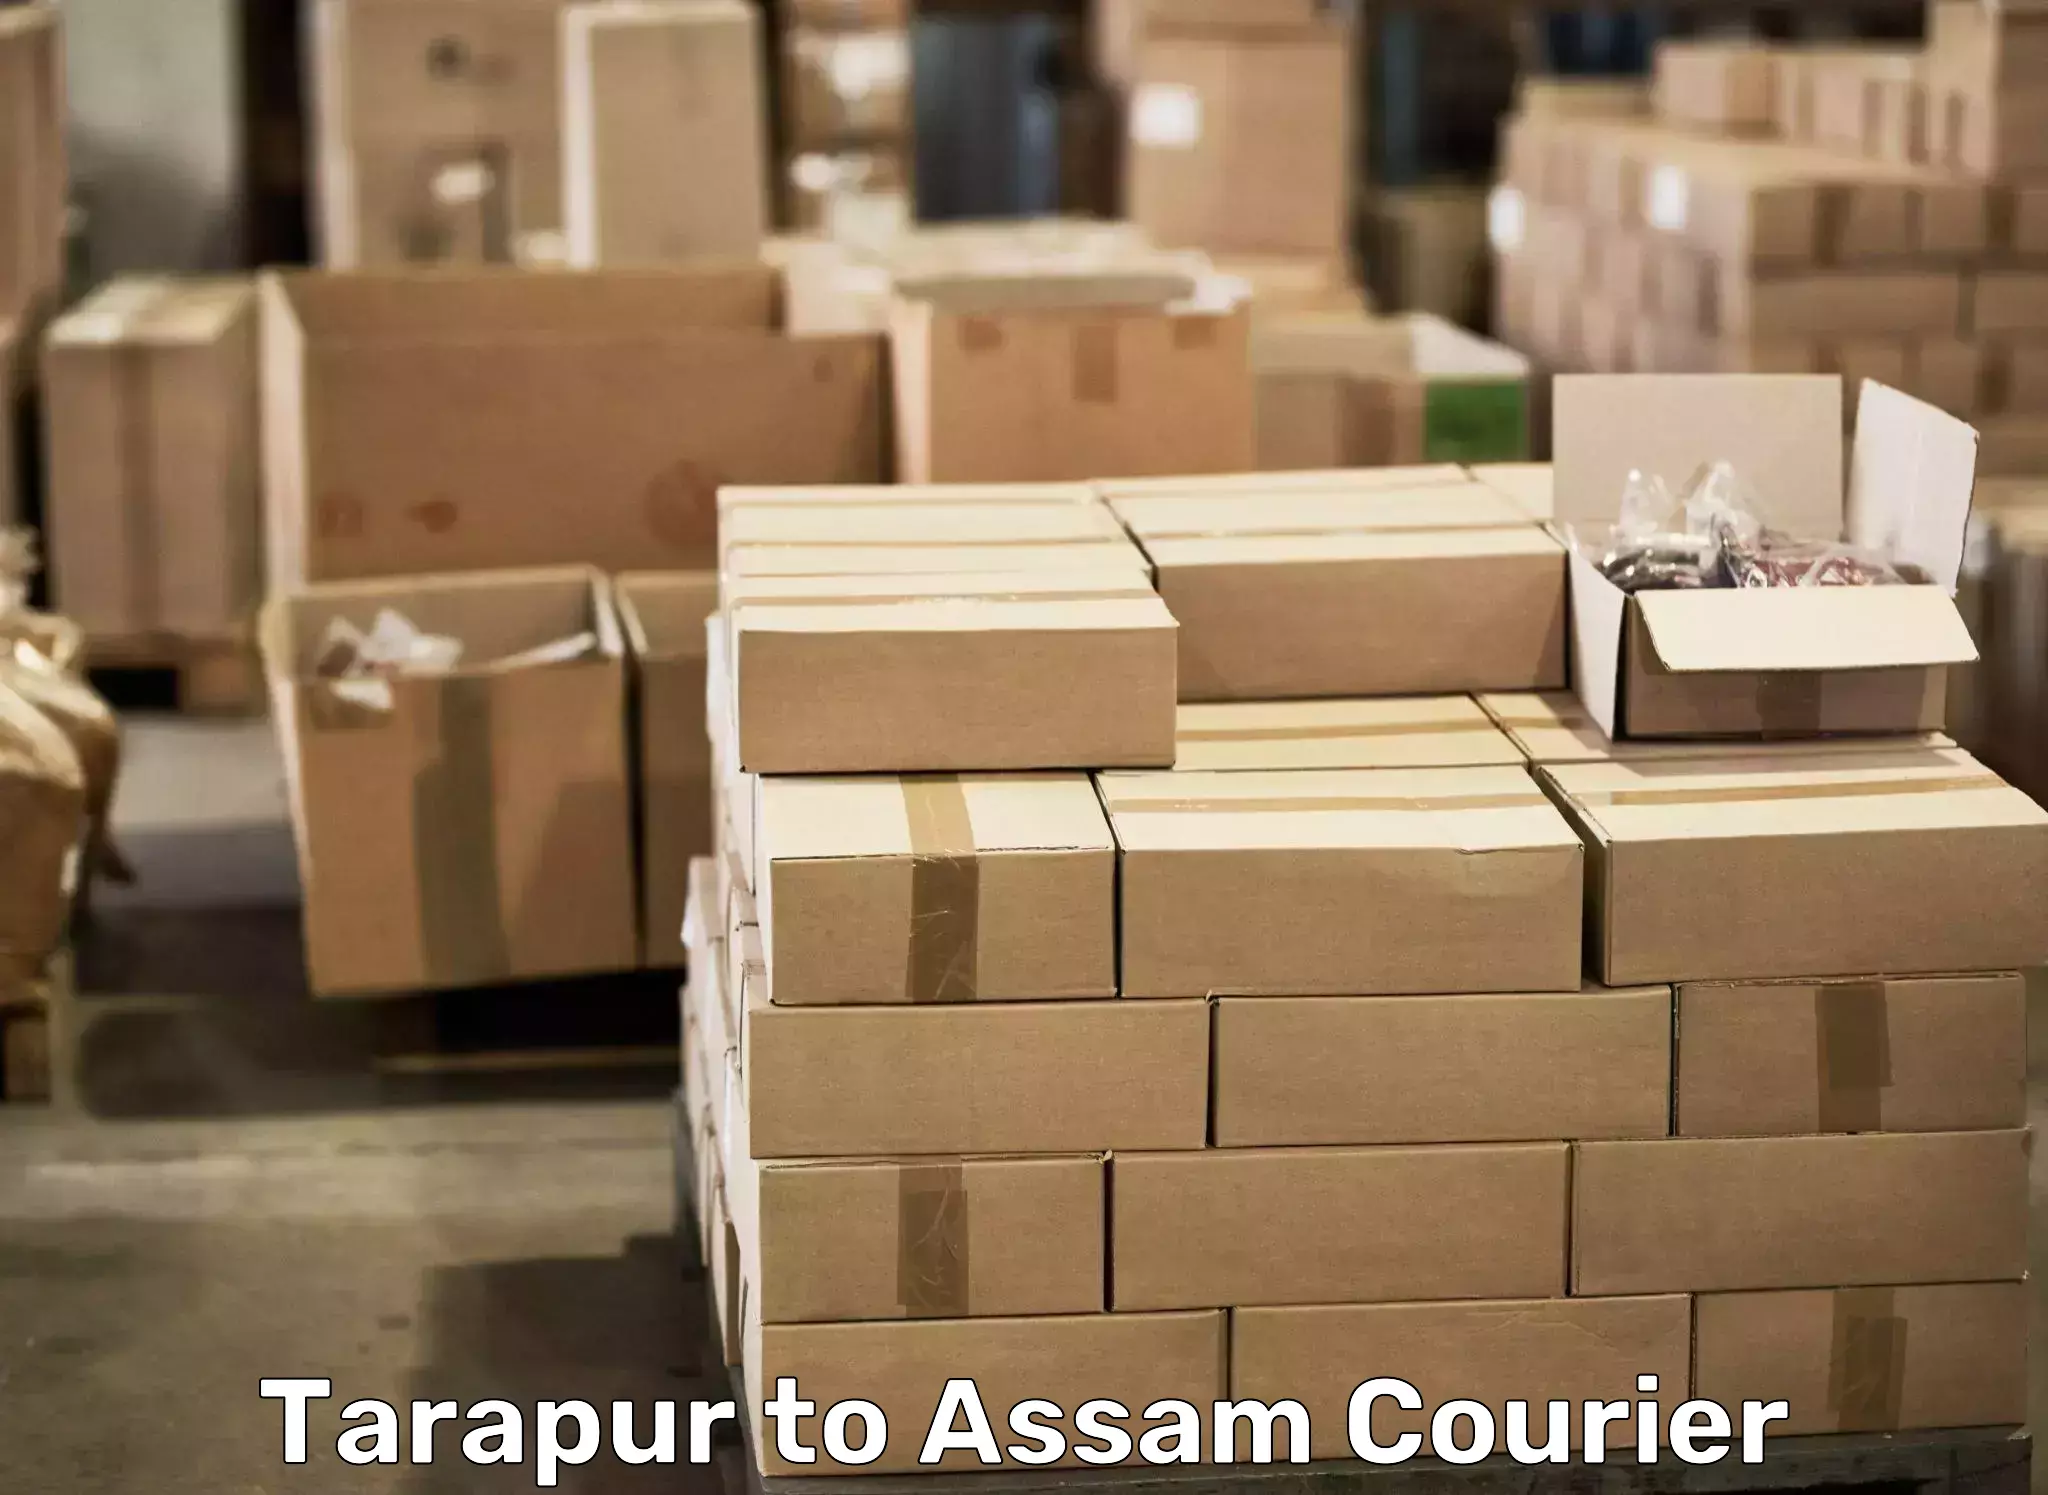 Efficient moving strategies Tarapur to Dergaon